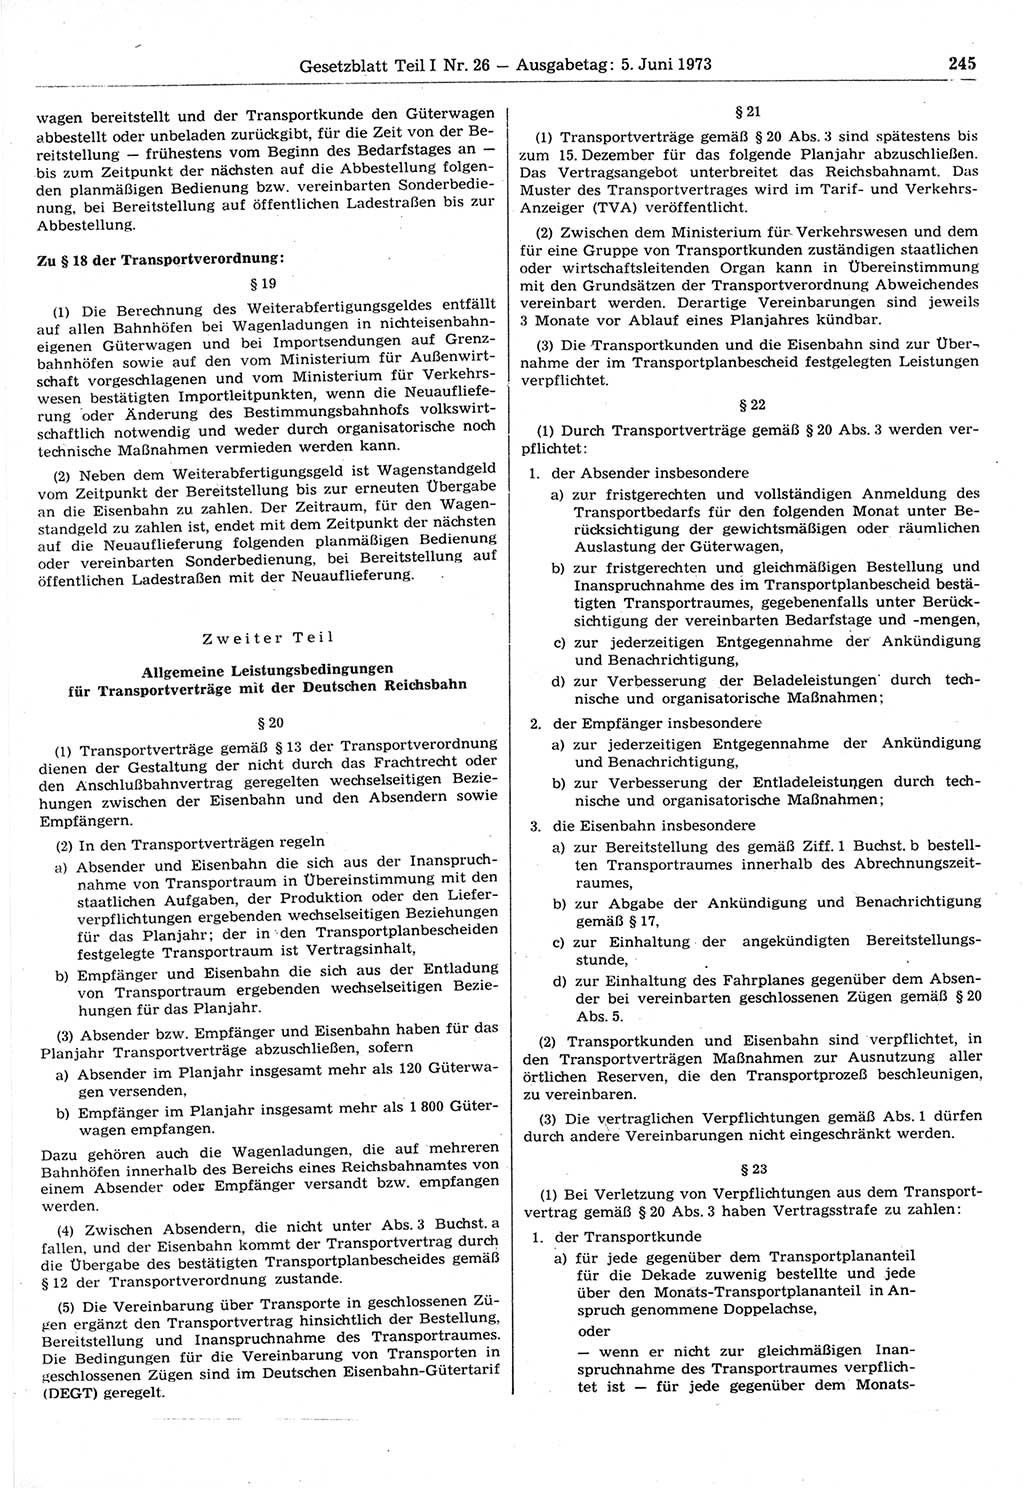 Gesetzblatt (GBl.) der Deutschen Demokratischen Republik (DDR) Teil Ⅰ 1973, Seite 245 (GBl. DDR Ⅰ 1973, S. 245)